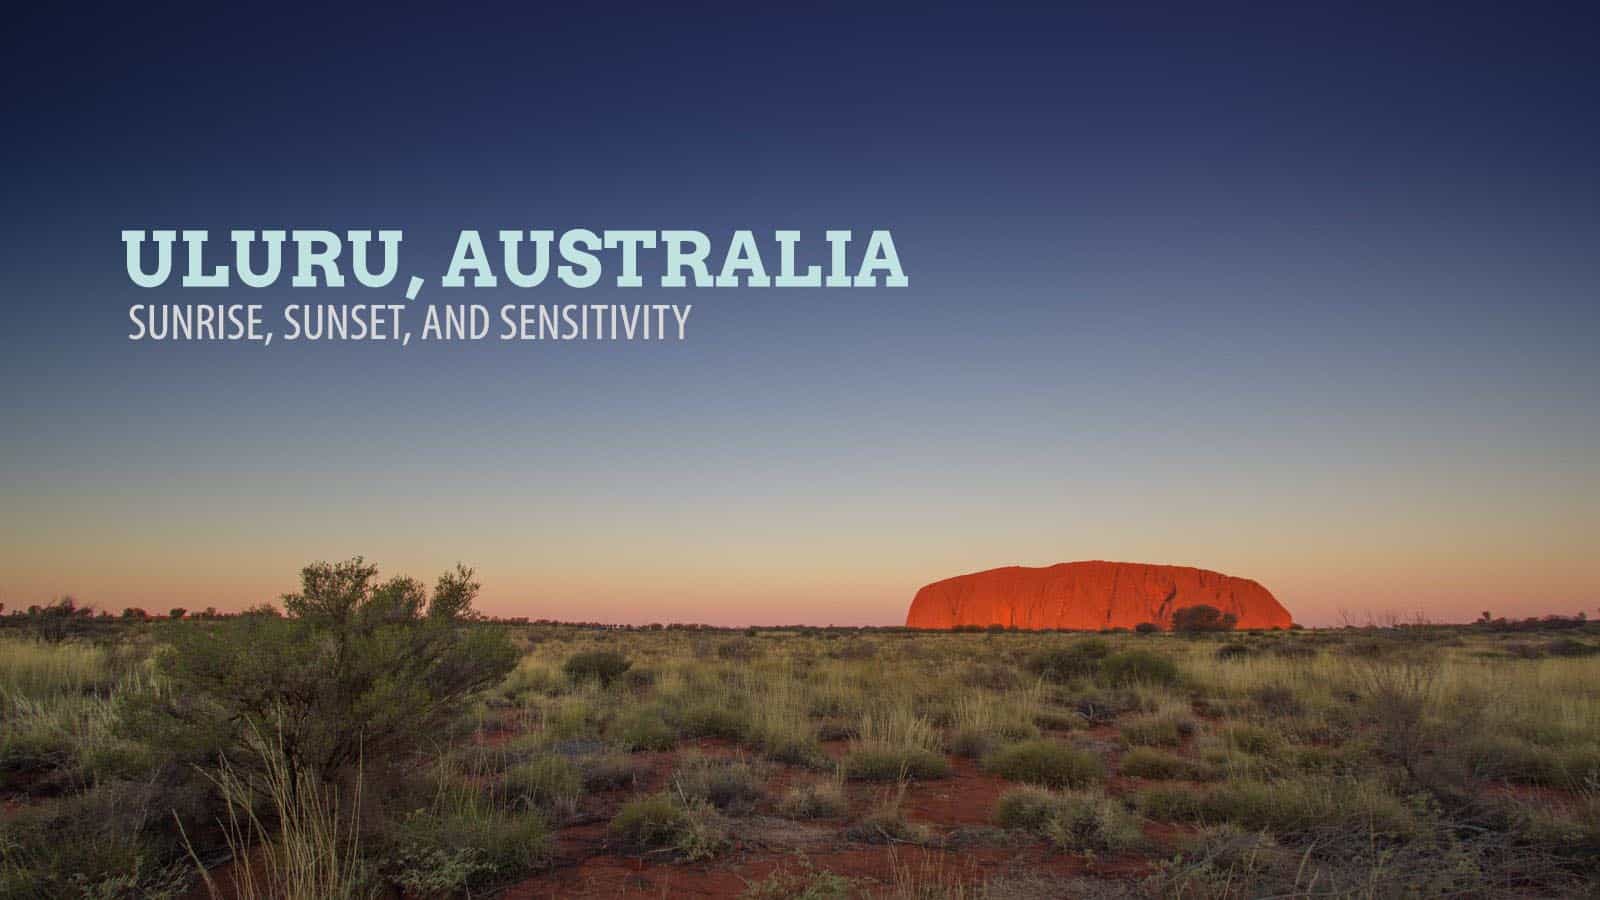 澳大利亚乌鲁鲁:日落、日出和敏感